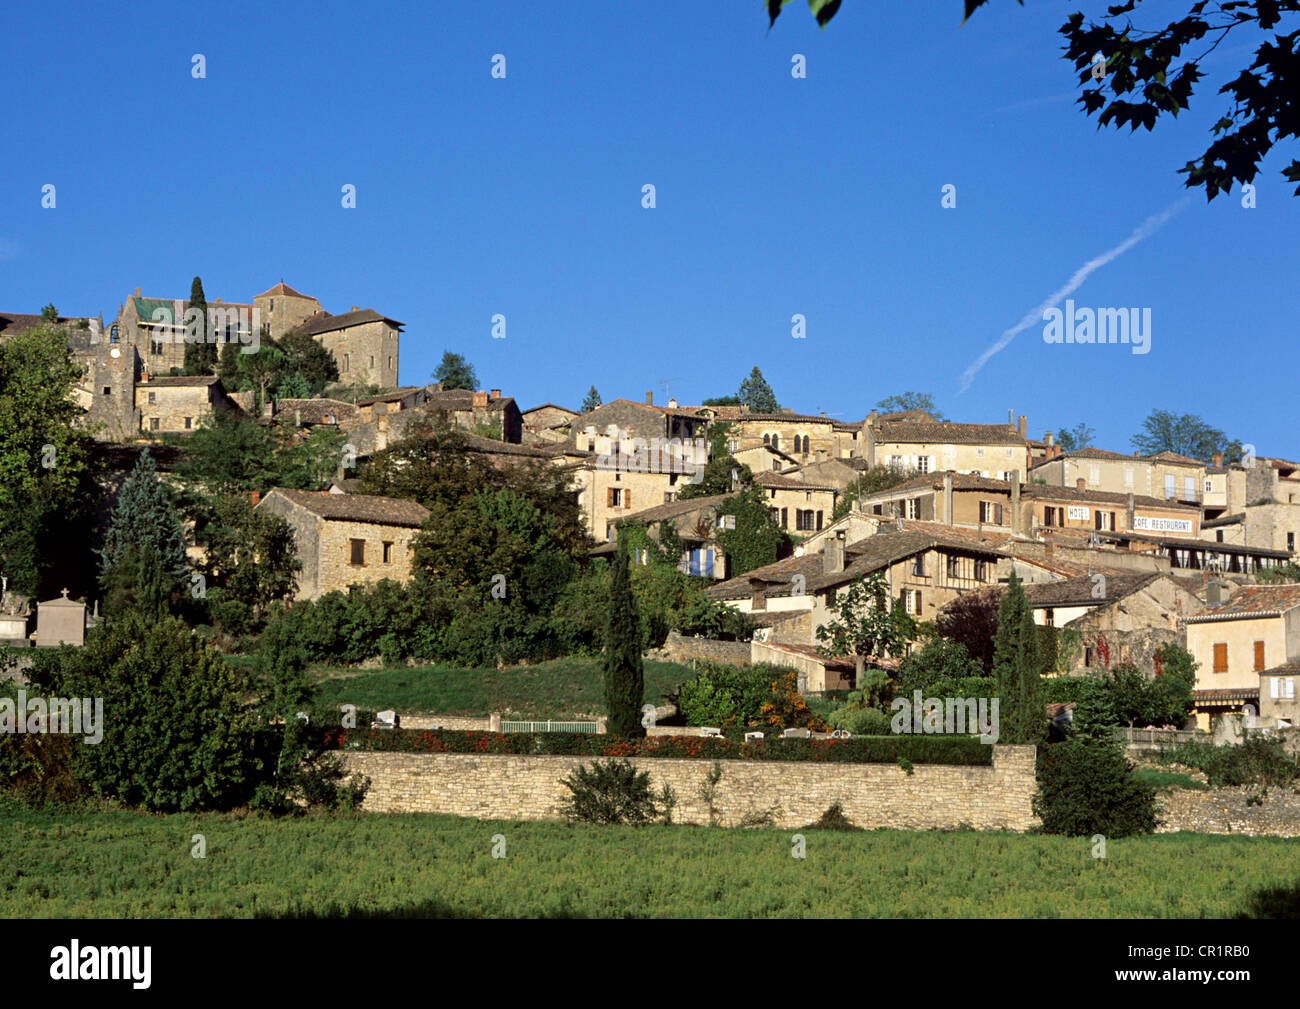 France, Tarn et Garonne, Bruniquel village, labelled Les Plus Beaux Villages de France (The Most Beautiful Villages of France) Stock Photo